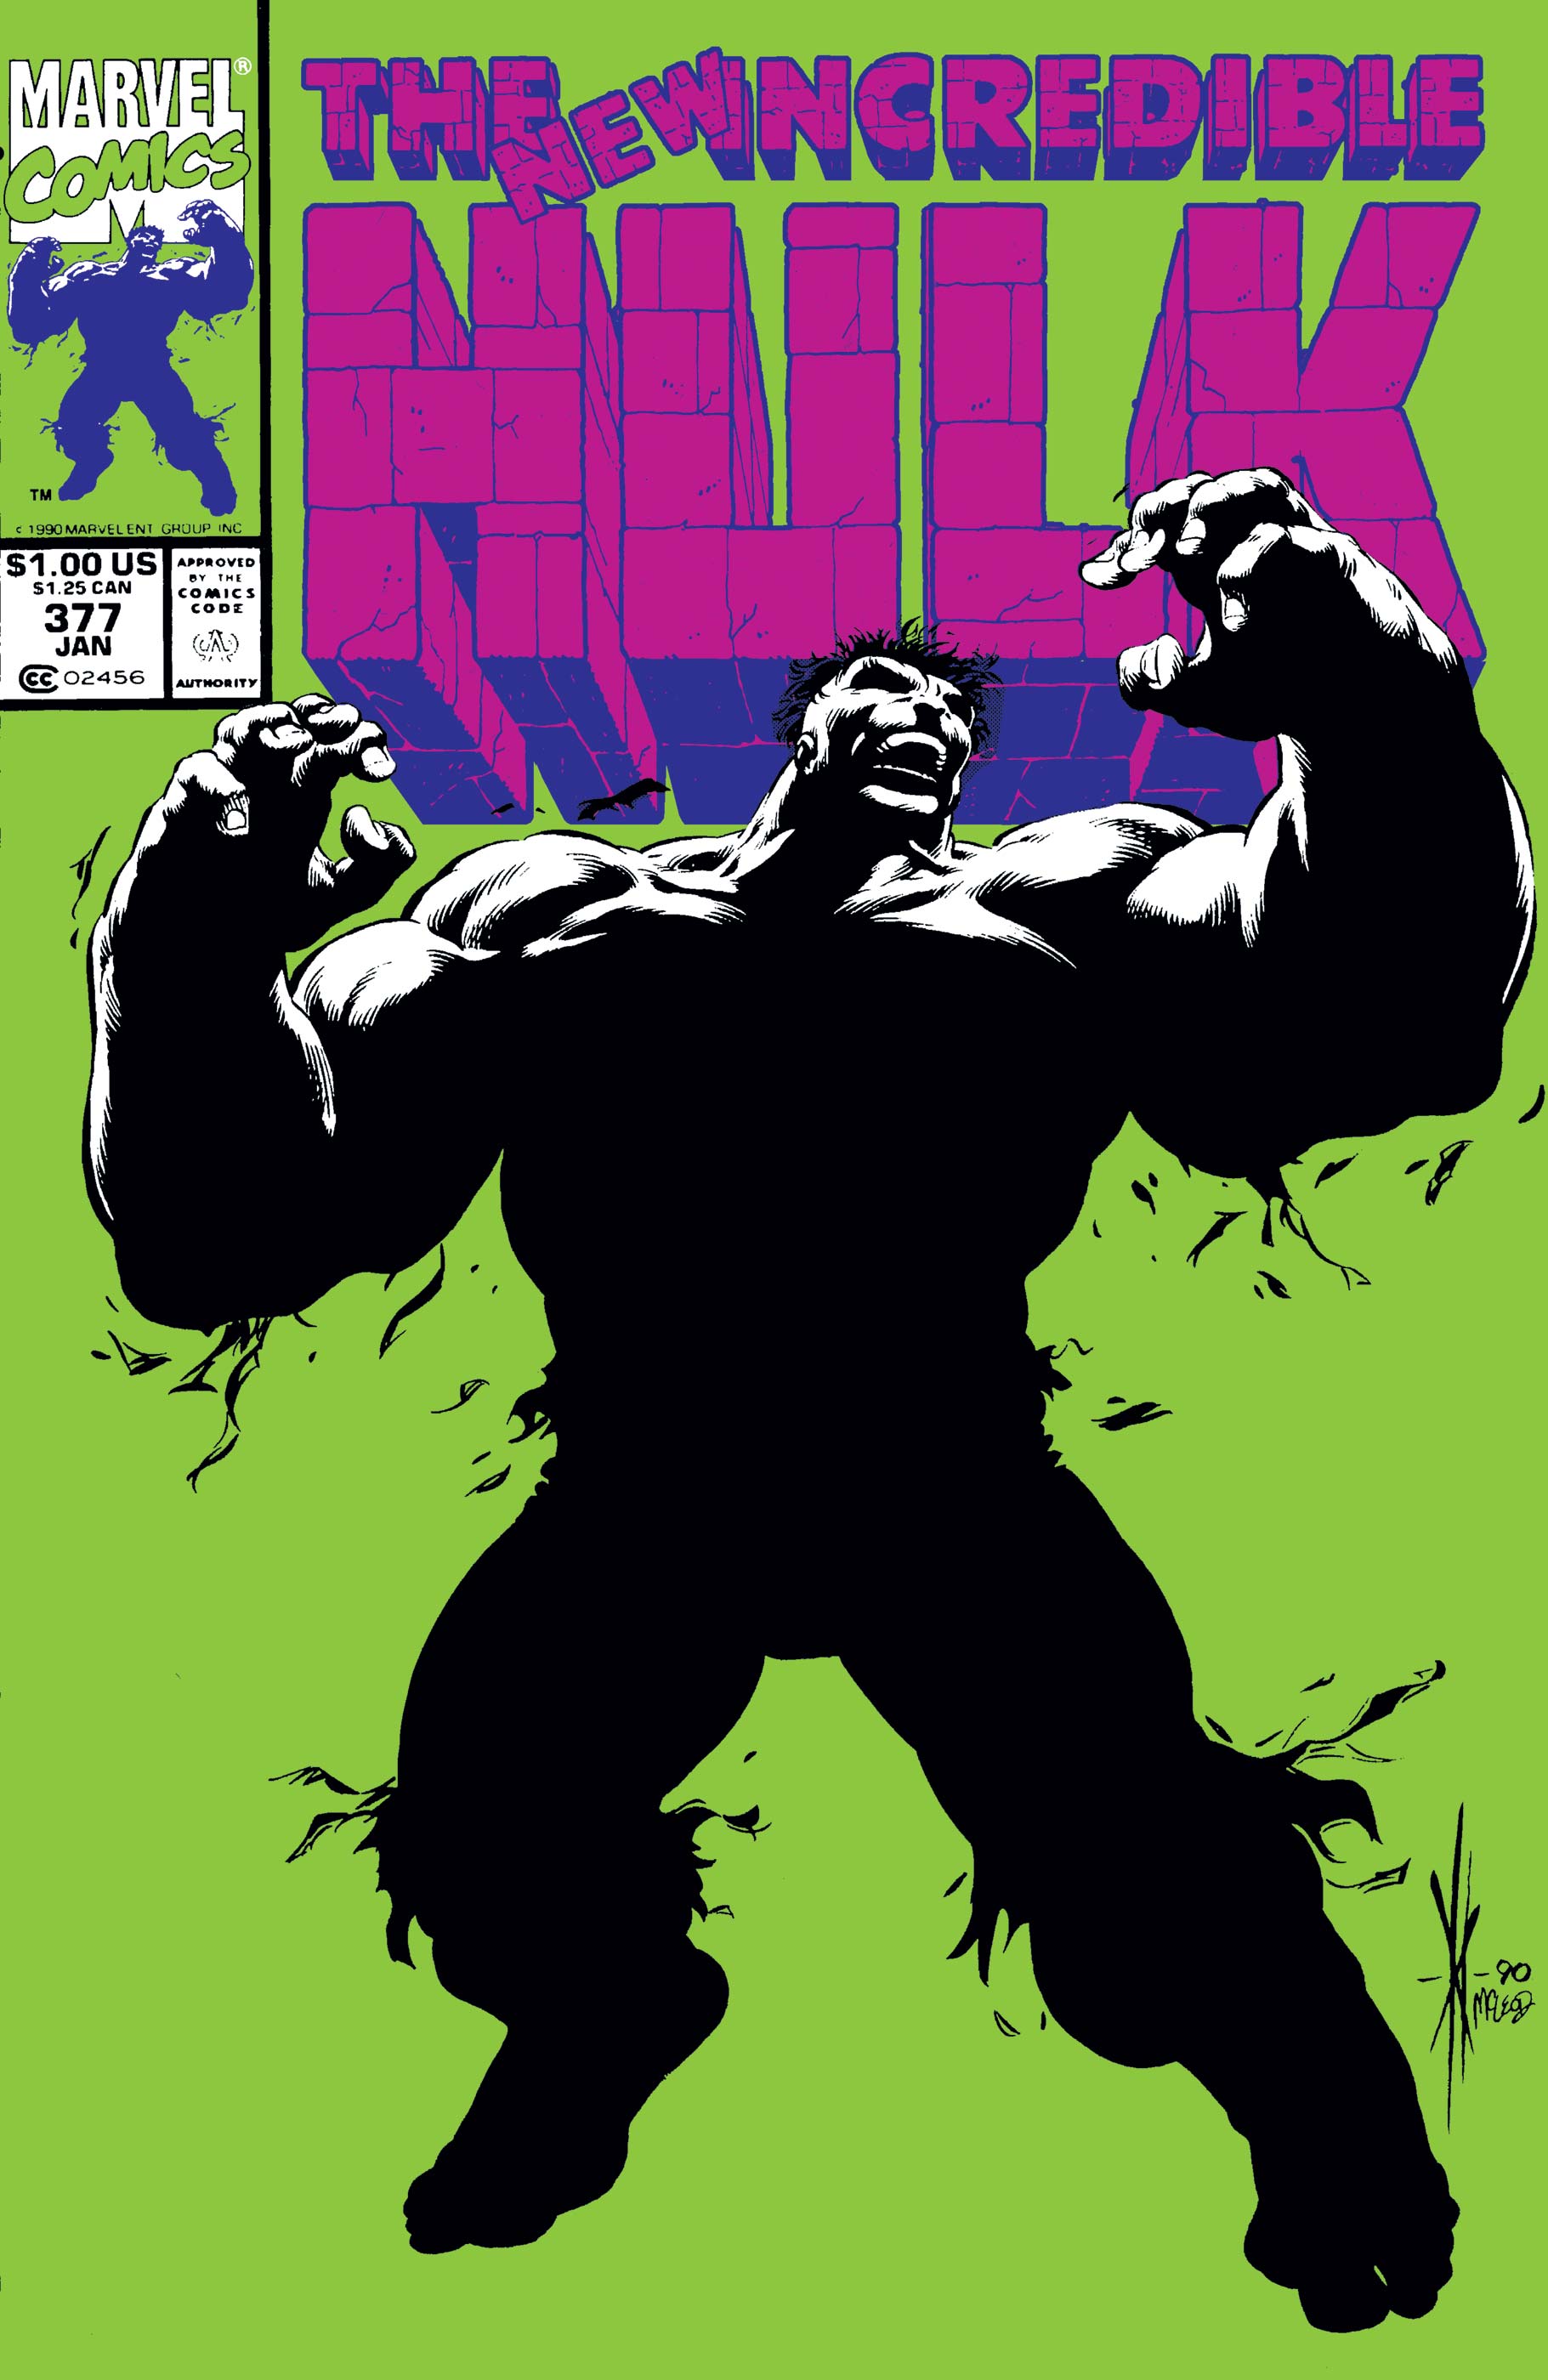 Incredible Hulk (1962) #377